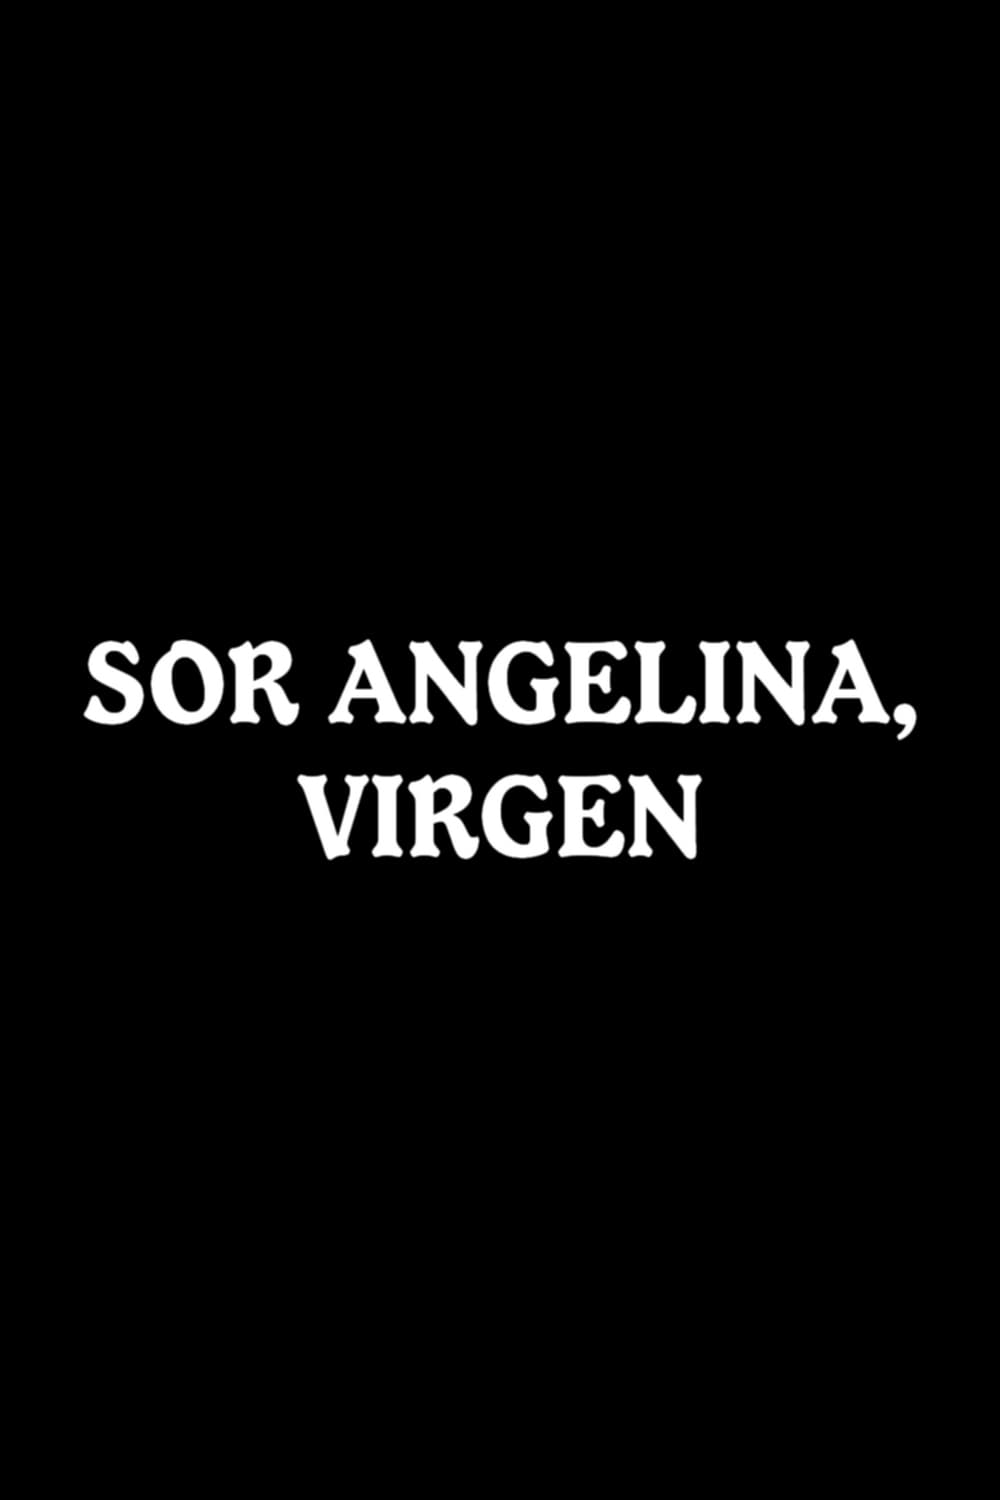 Sor Angelina, virgen